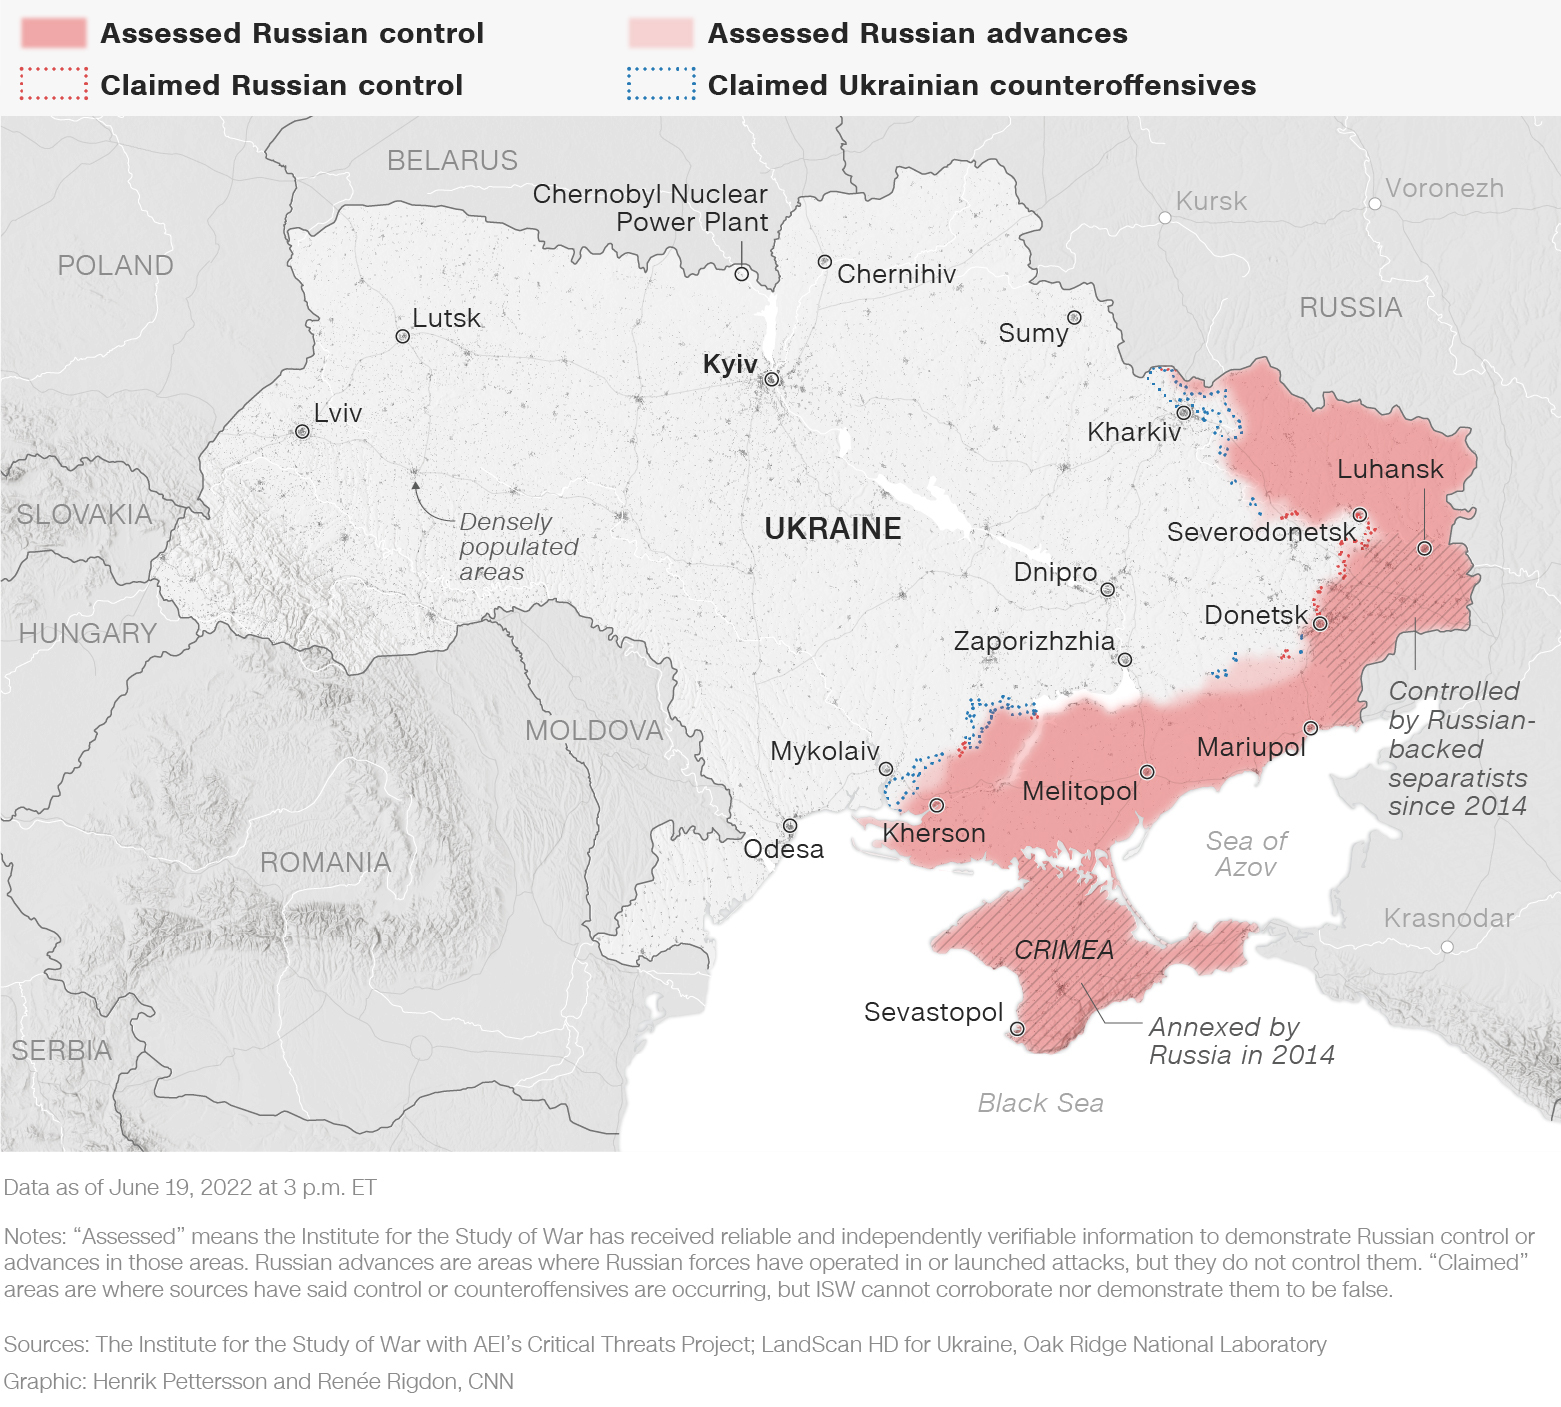 Las fuerzas rusas usan drones kamikaze para atacar ciudades en el noreste de Ucrania